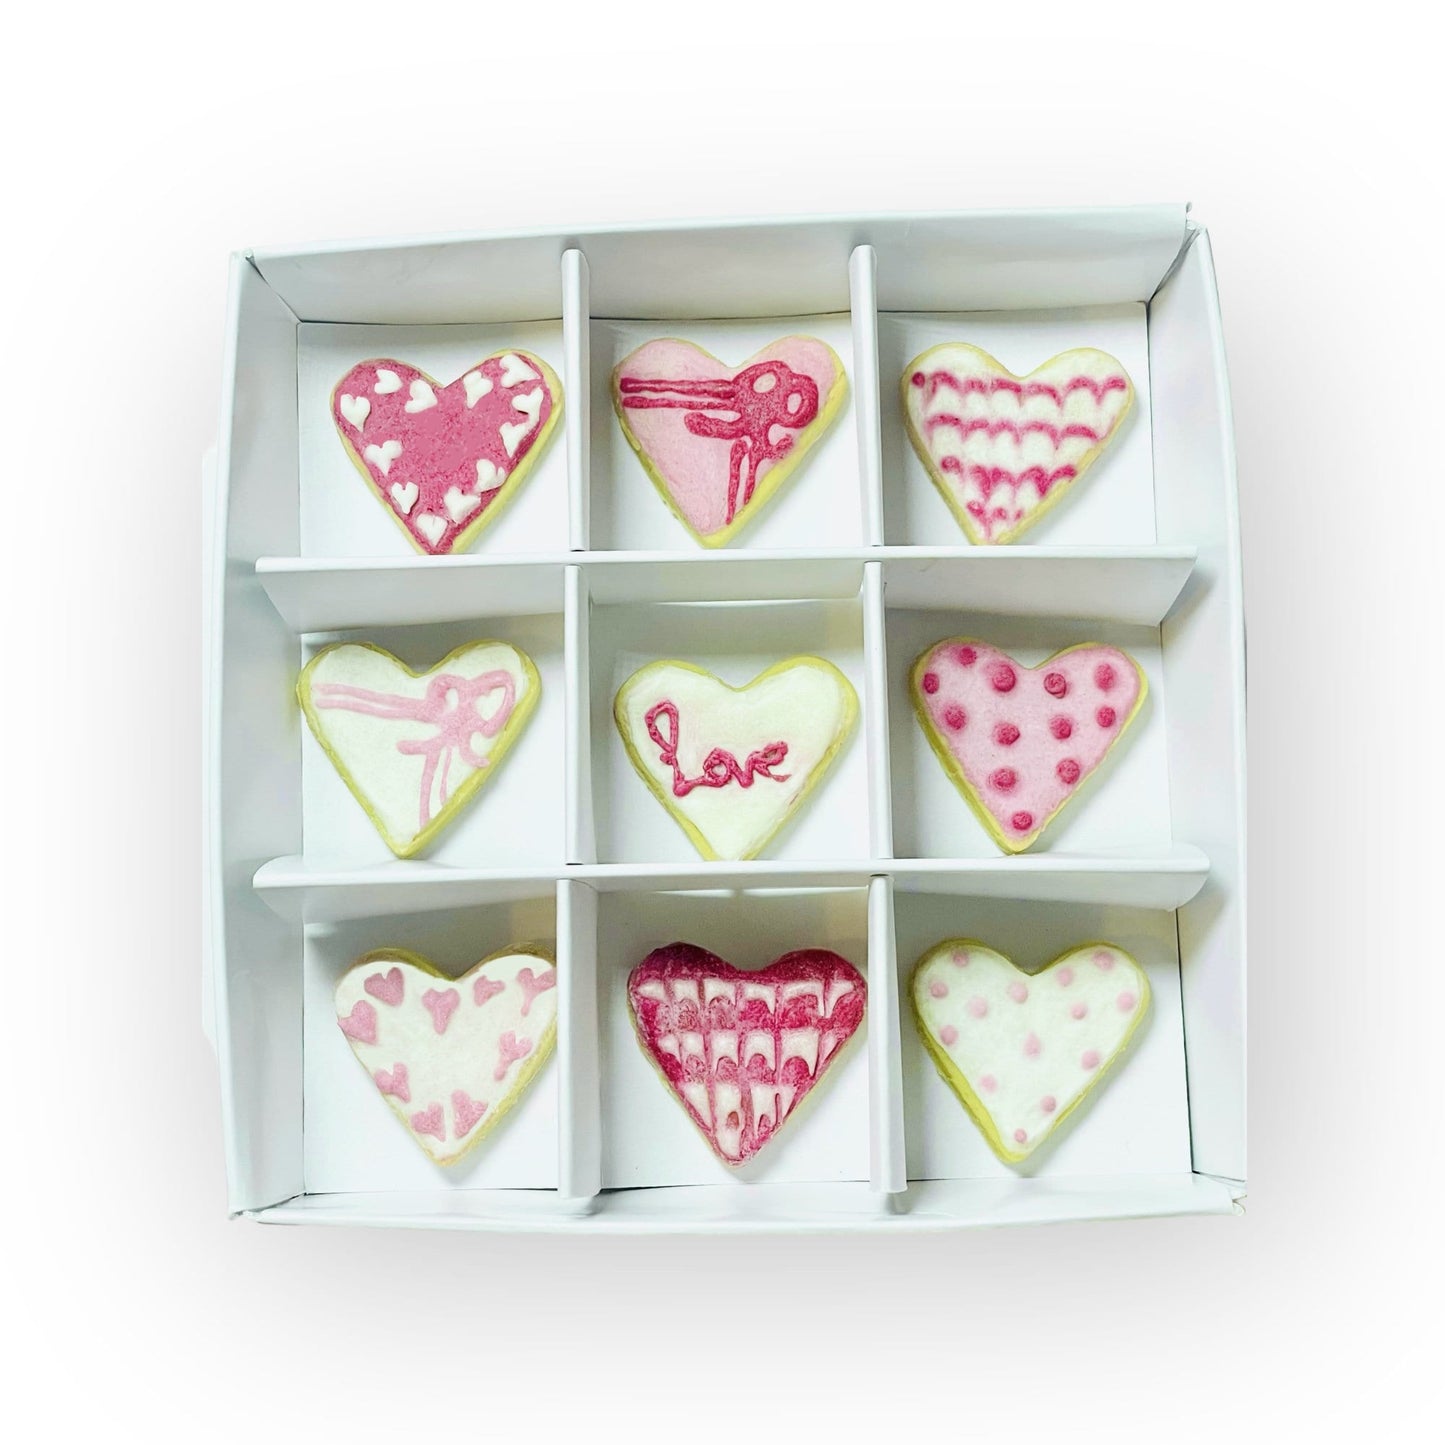 Love hearts iced dog treats gift box - 1